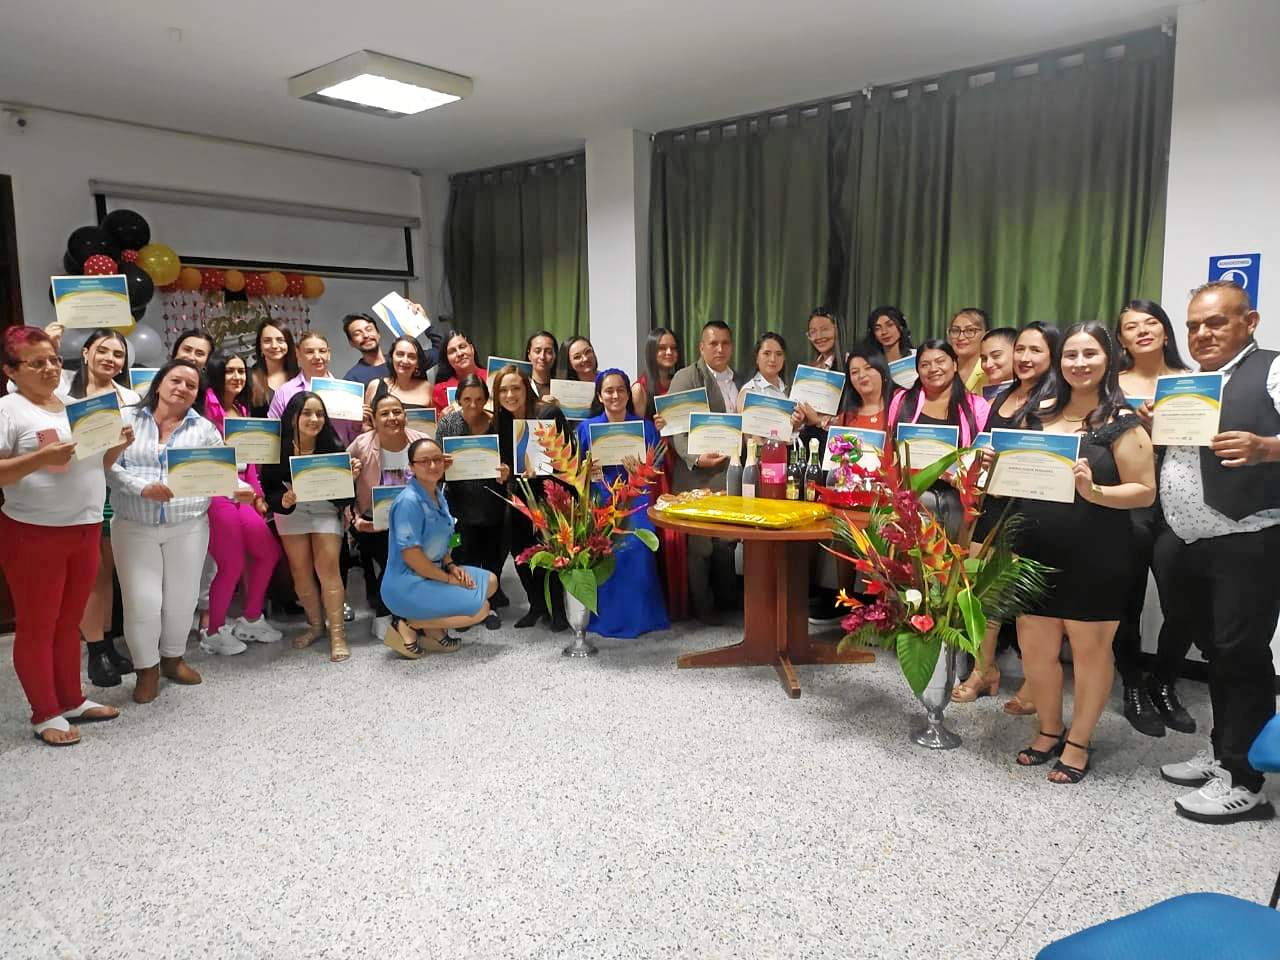 Foto | Cortesía | LA PATRIA Grupo de graduados asistentes al recibimiento del certificado del diplomado.